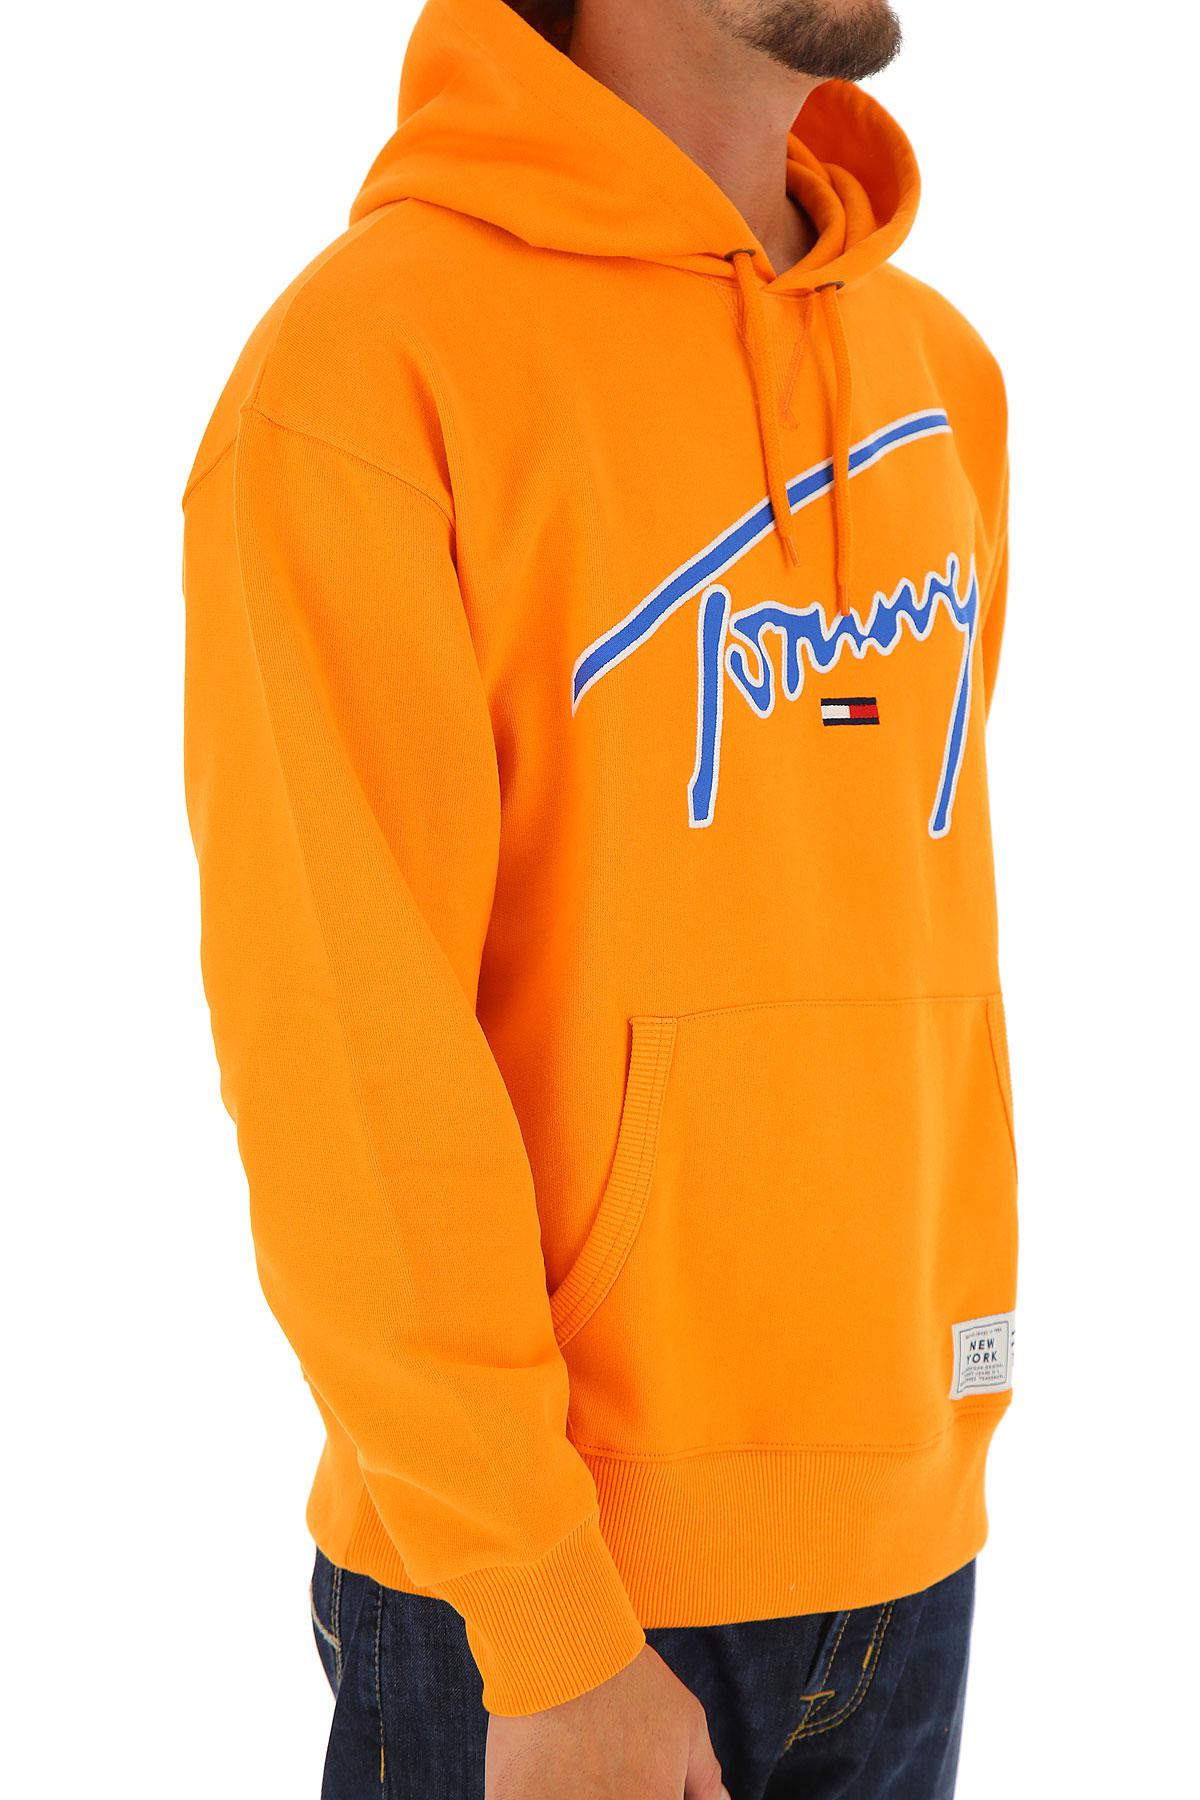 Tommy Hilfiger Orange Hoodie Deals, 52% OFF | www.velocityusa.com